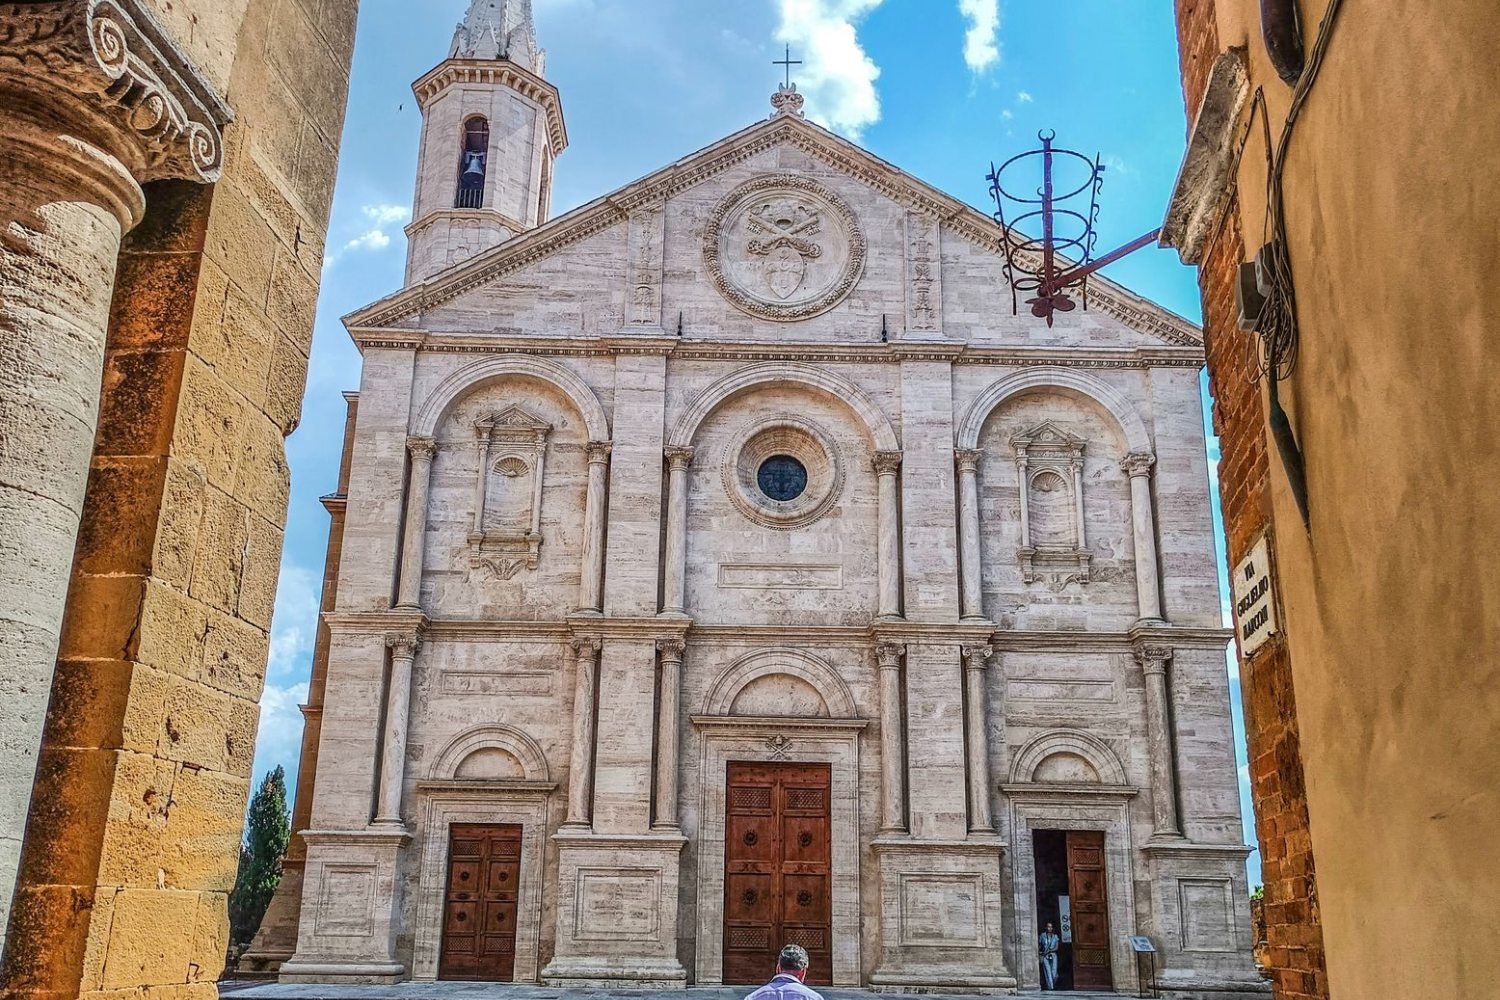 Toscana templom bejárata